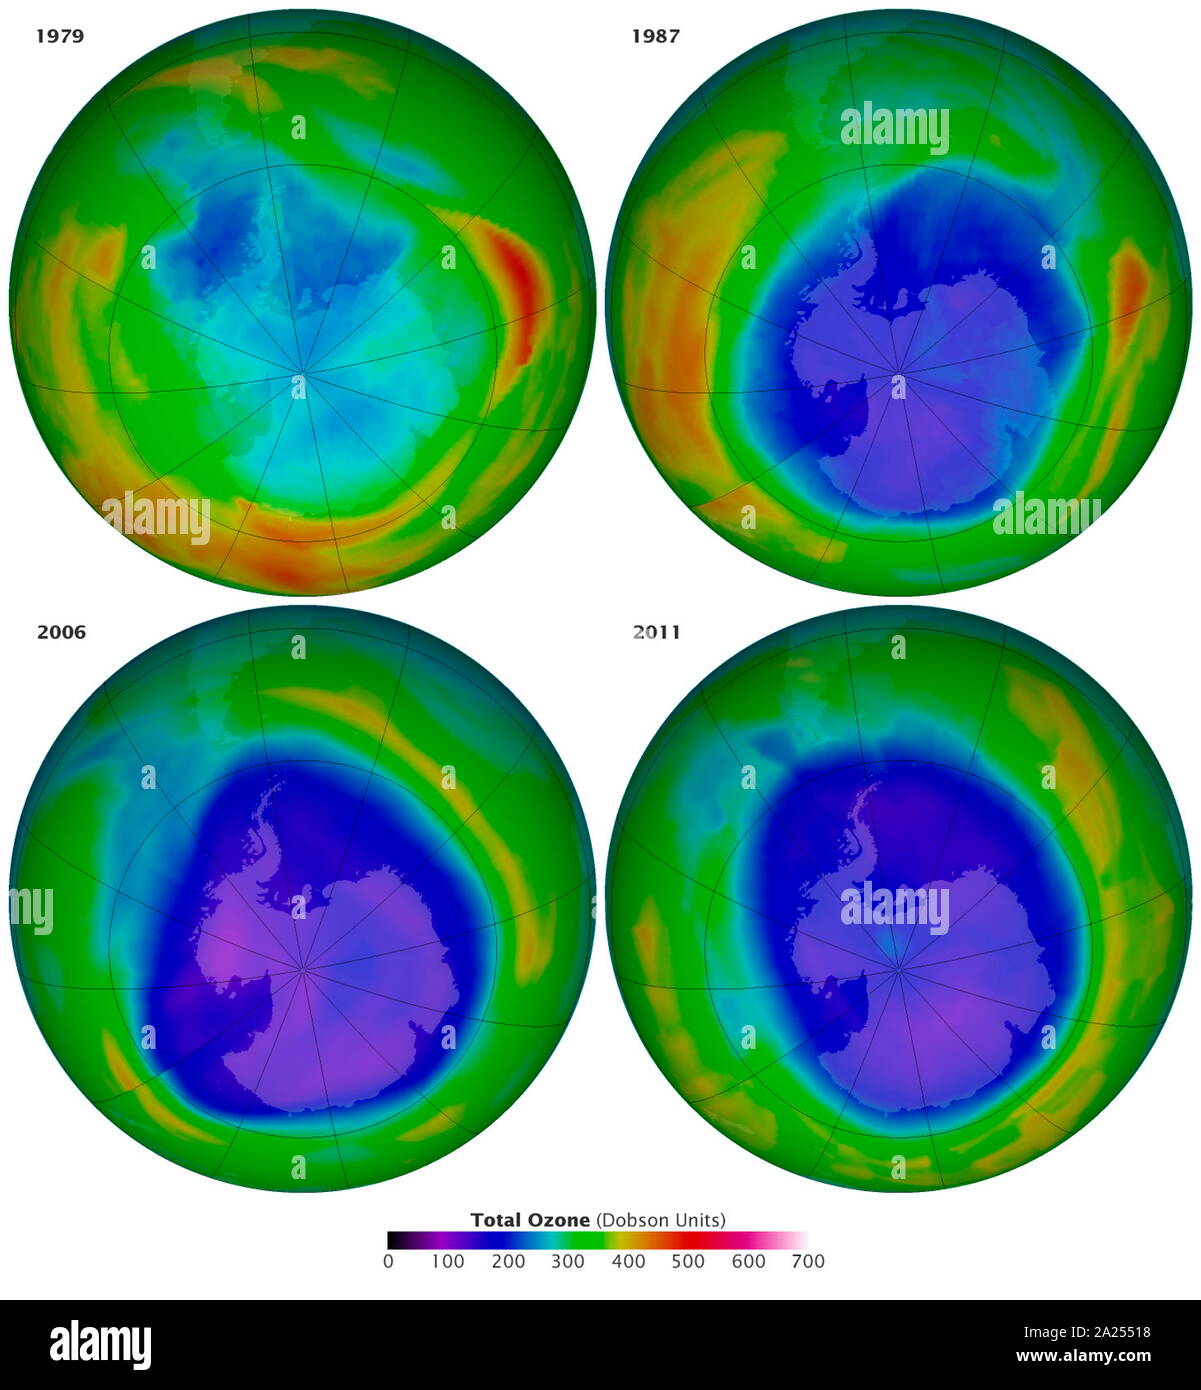 Quatre images montrant le trou d'ozone antarctique sur Septembre 16, 1987 En 1979, 2006 et 2011. Les deux dernières images montrent le plus bas (2006) et le deuxième plus bas (2011) les concentrations d'ozone à ce jour, comme indiqué en bleu, et ont été capturés par l'OMI d'instrument sur l'Aura satellite.&# 13 ;&# 10 ; Banque D'Images